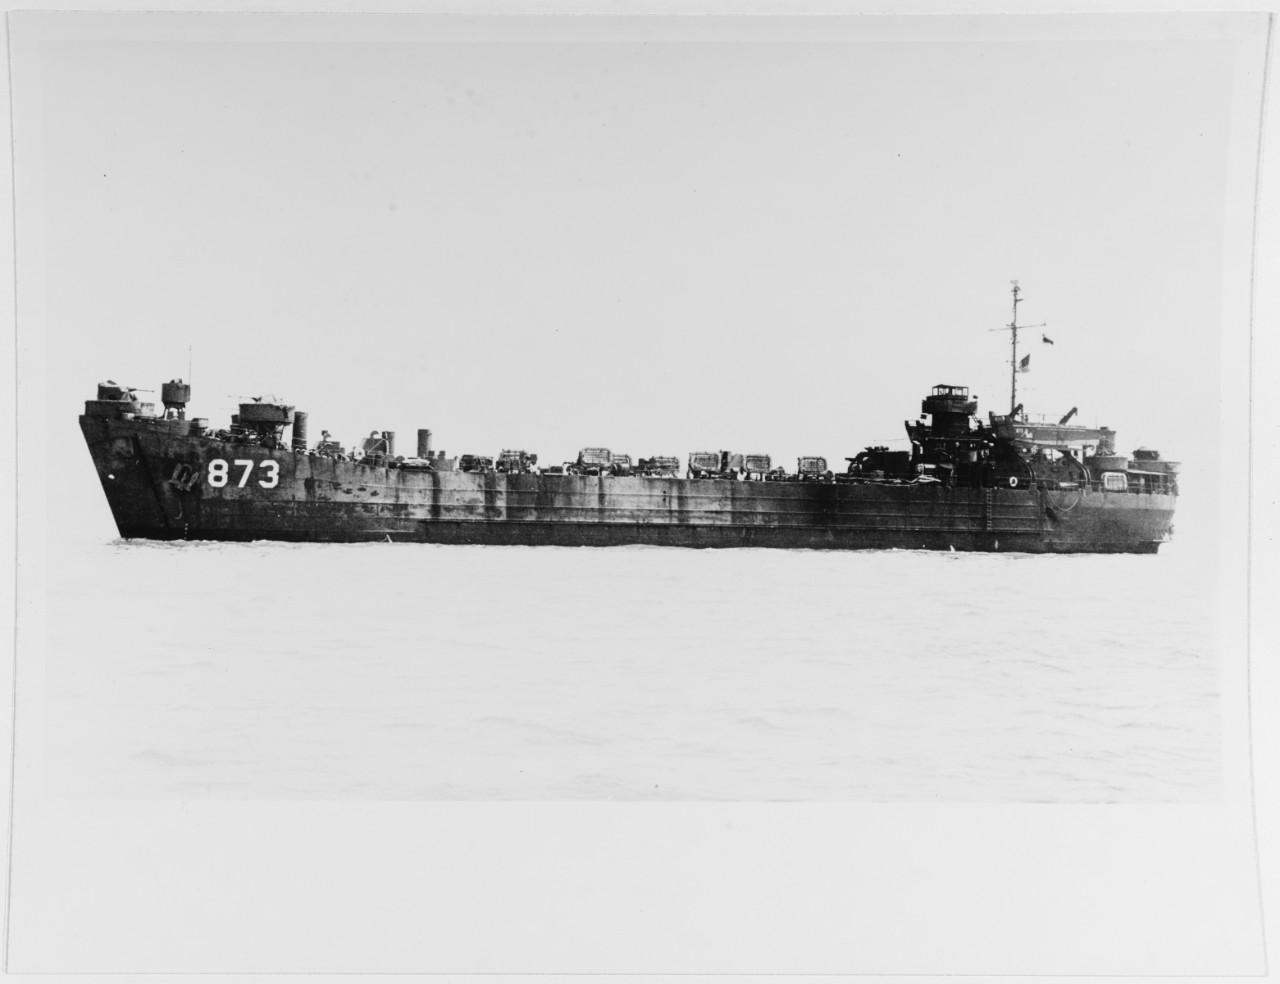 USS LST-873